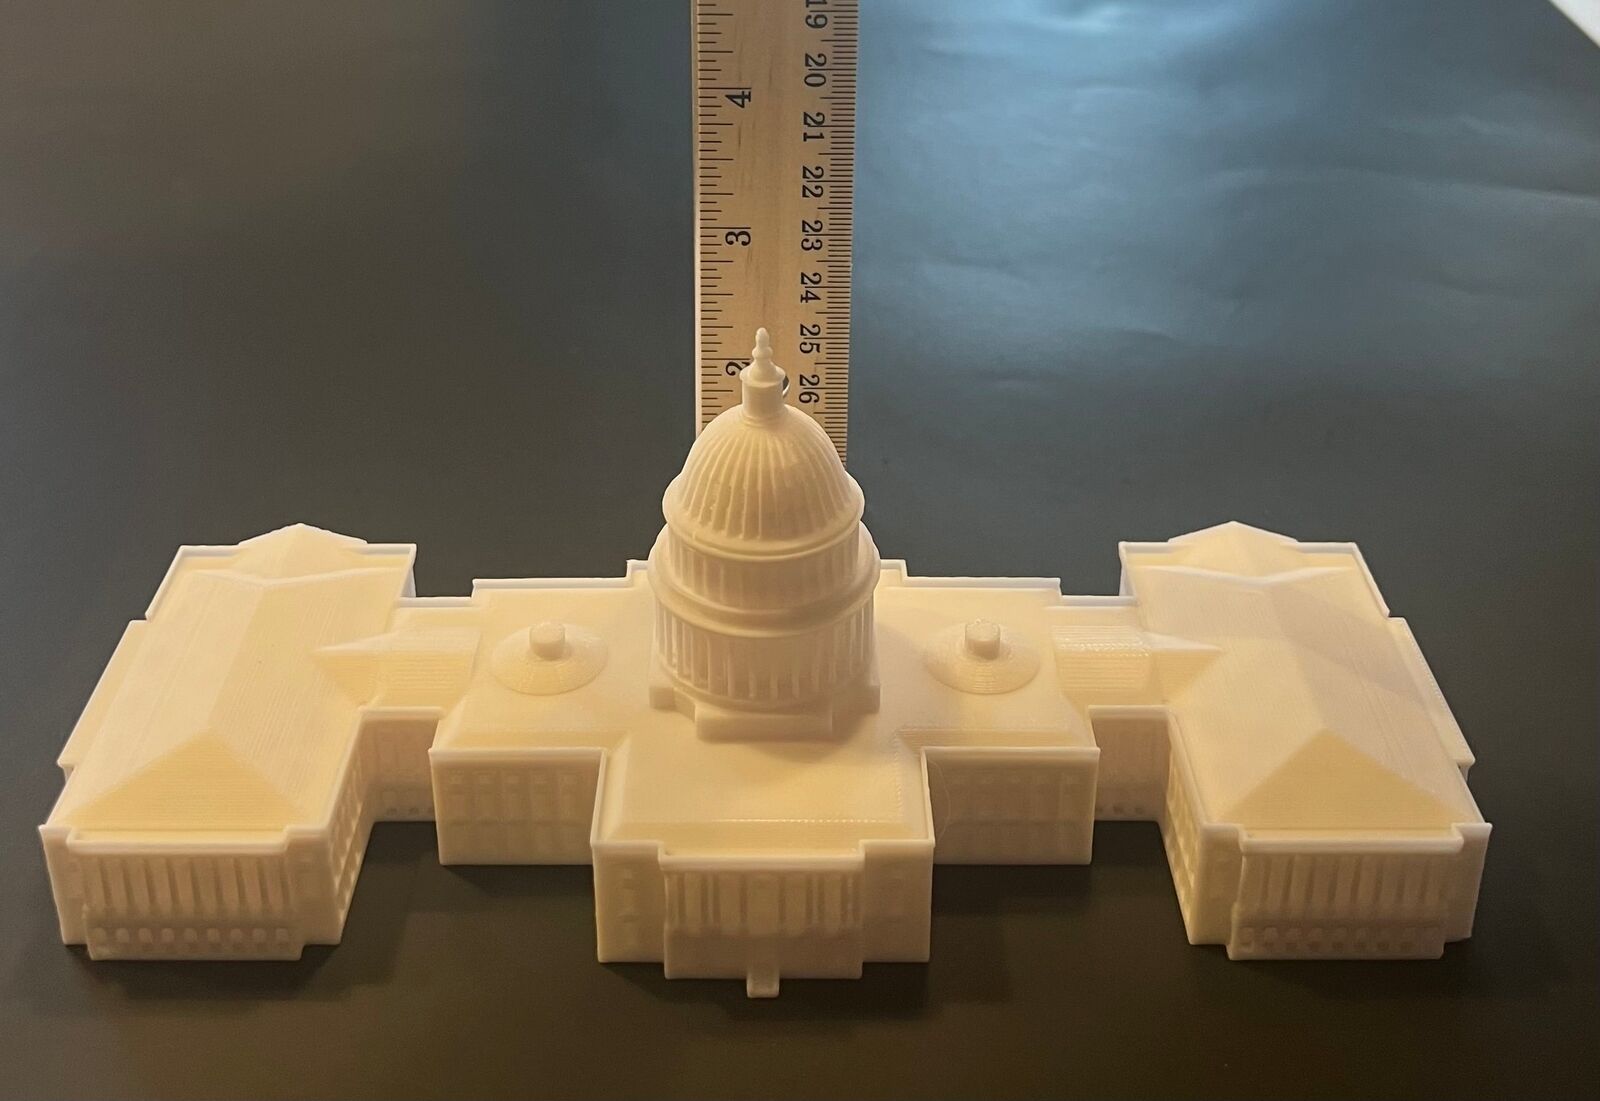 United States Capitol (large), 3D souvenir miniature building replica